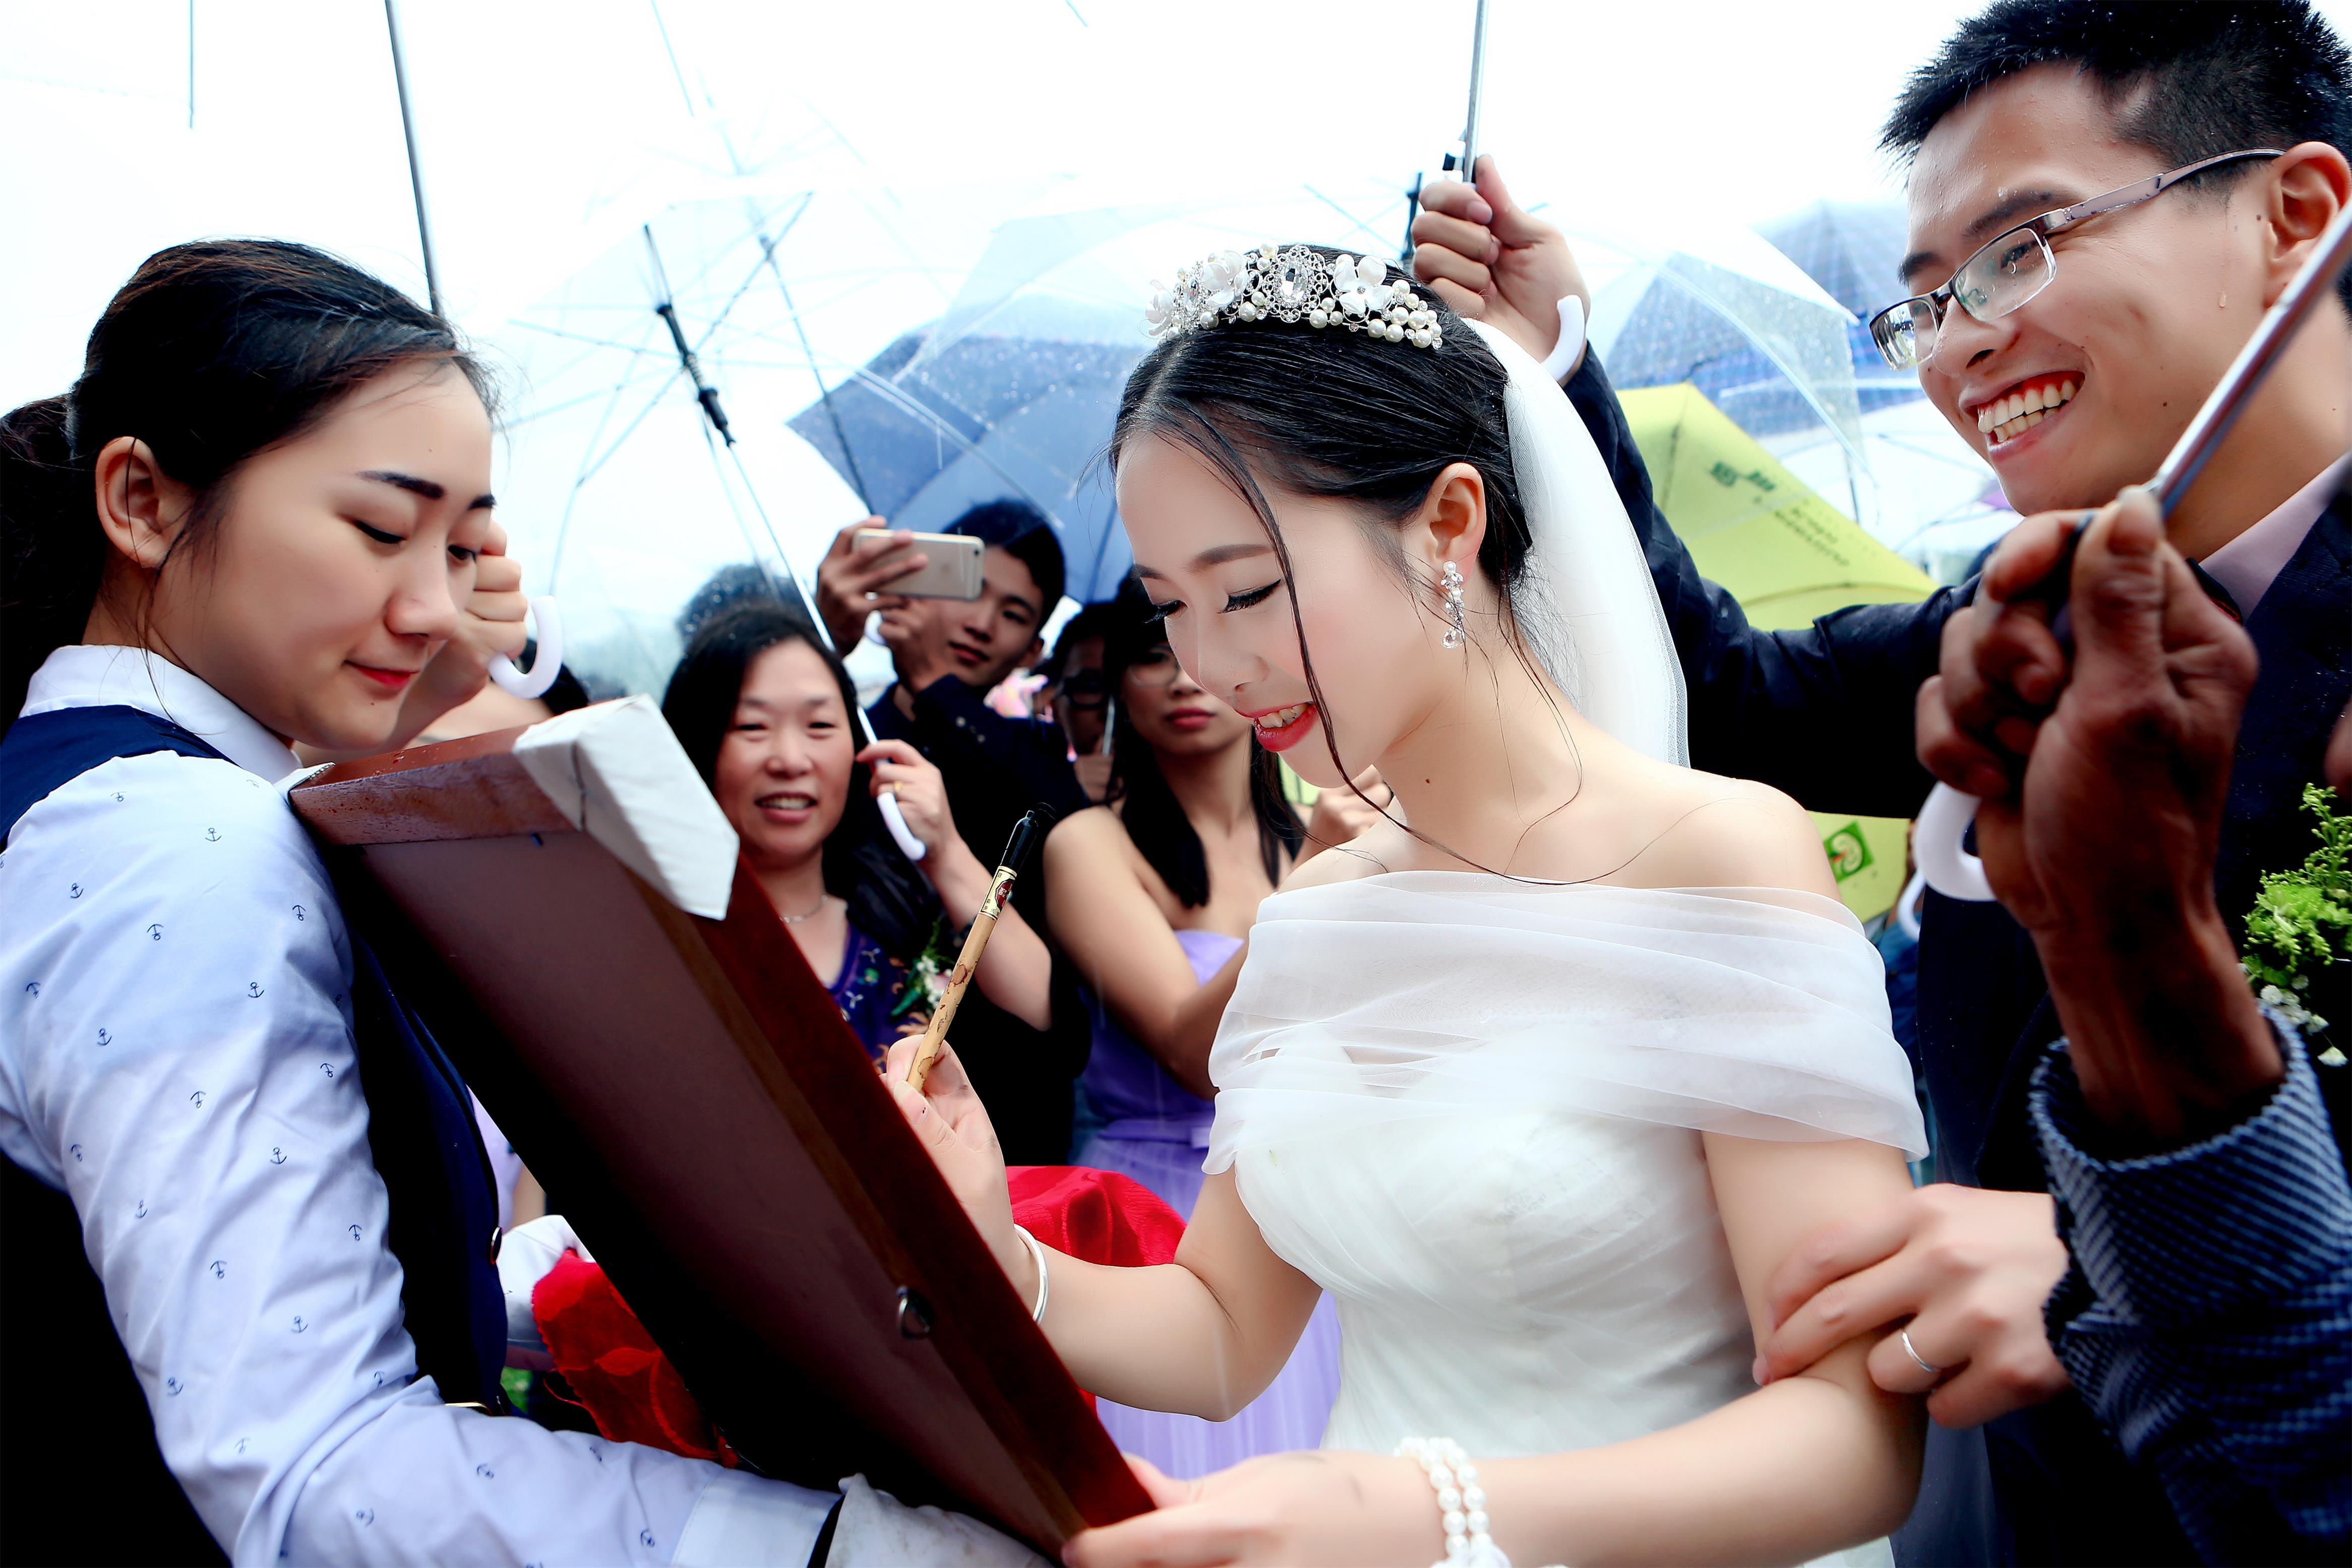 新郎新娘在雨中带雨伞. 露天婚礼 库存照片. 图片 包括有 未婚夫, 婚姻, 摄影师, 人们, 帽子, 夫妇 - 212065624